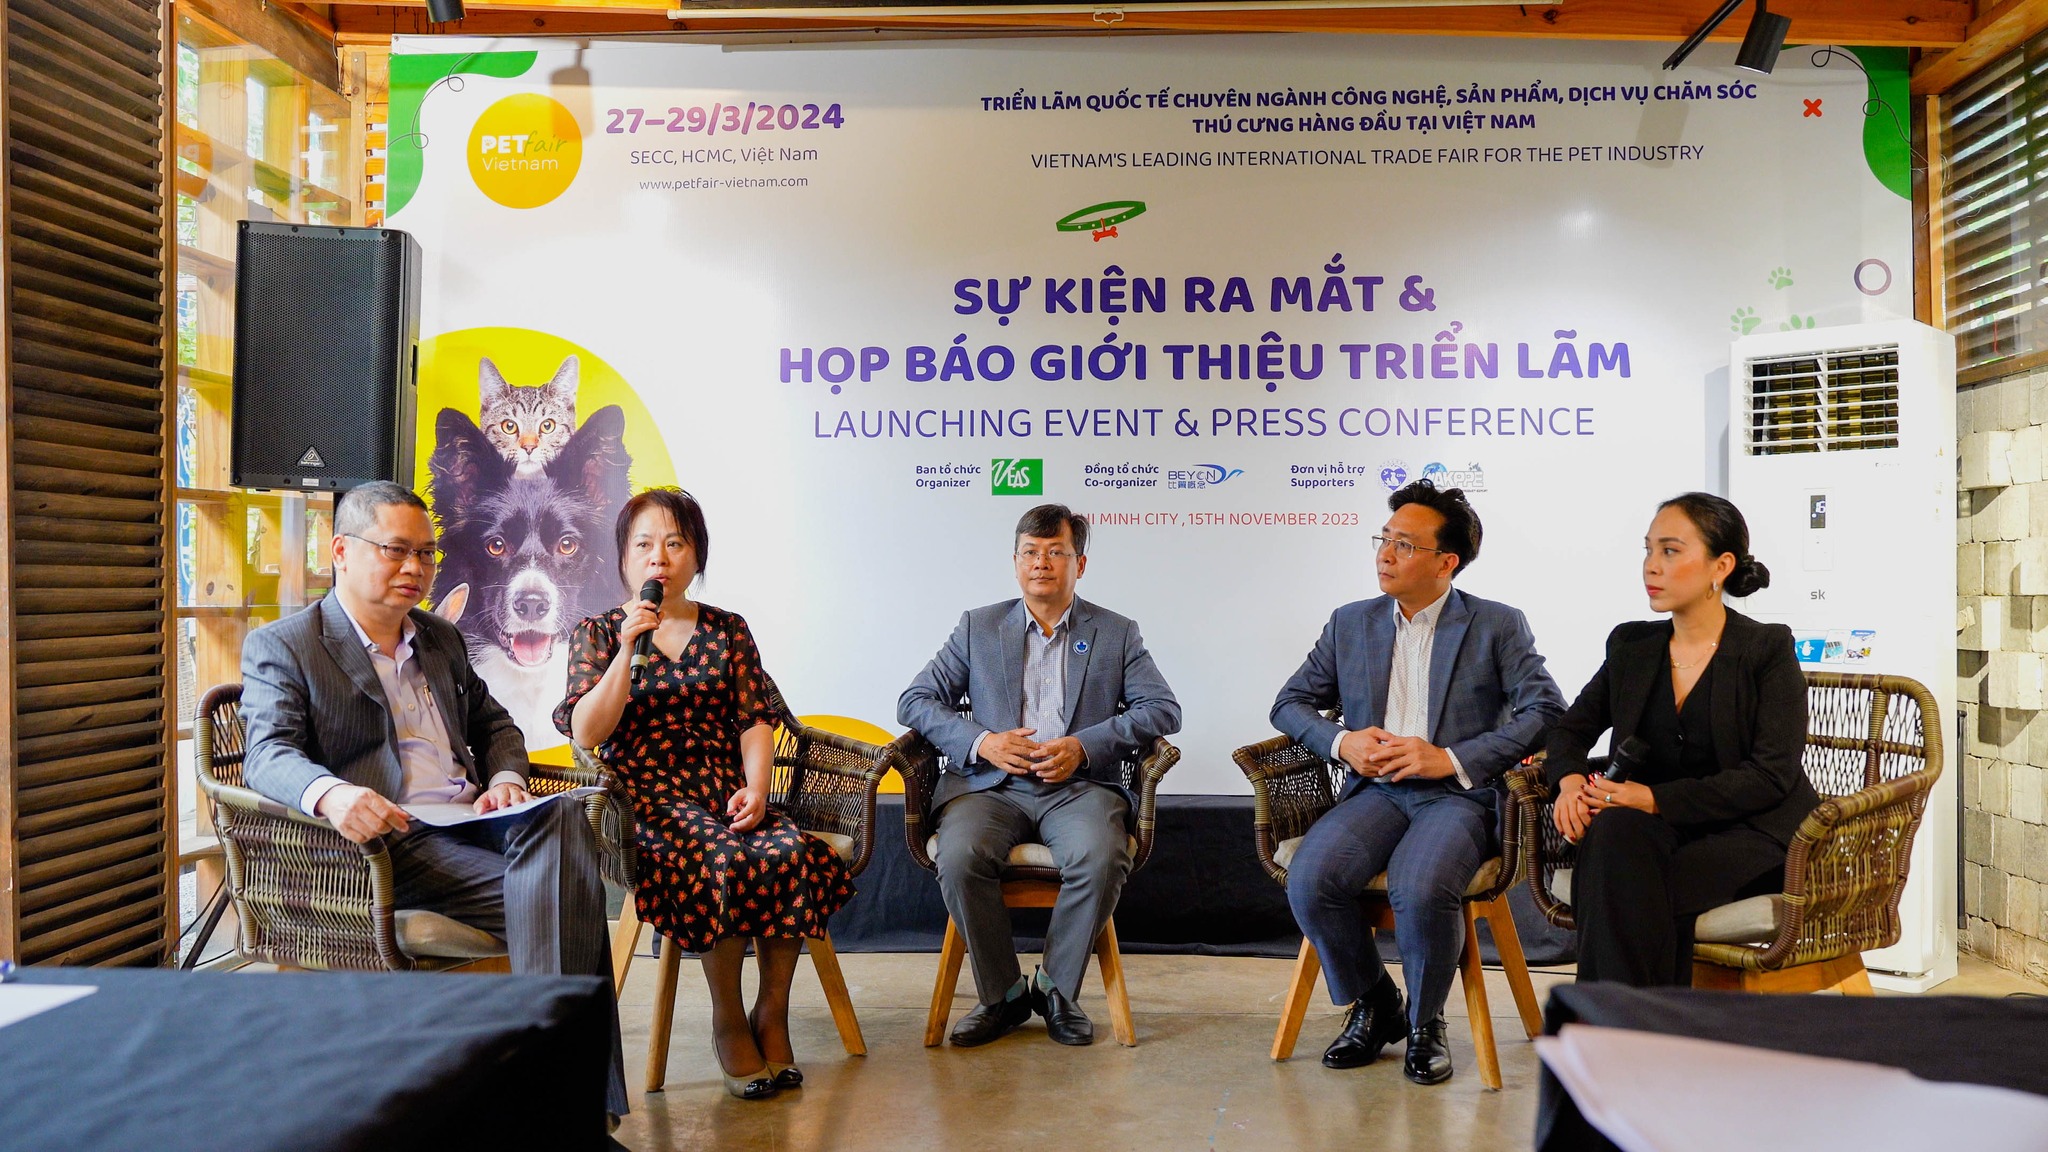 Sự kiện ra mắt họp báo giới thiệu triển lãm Pet Fair Vietnam 2024